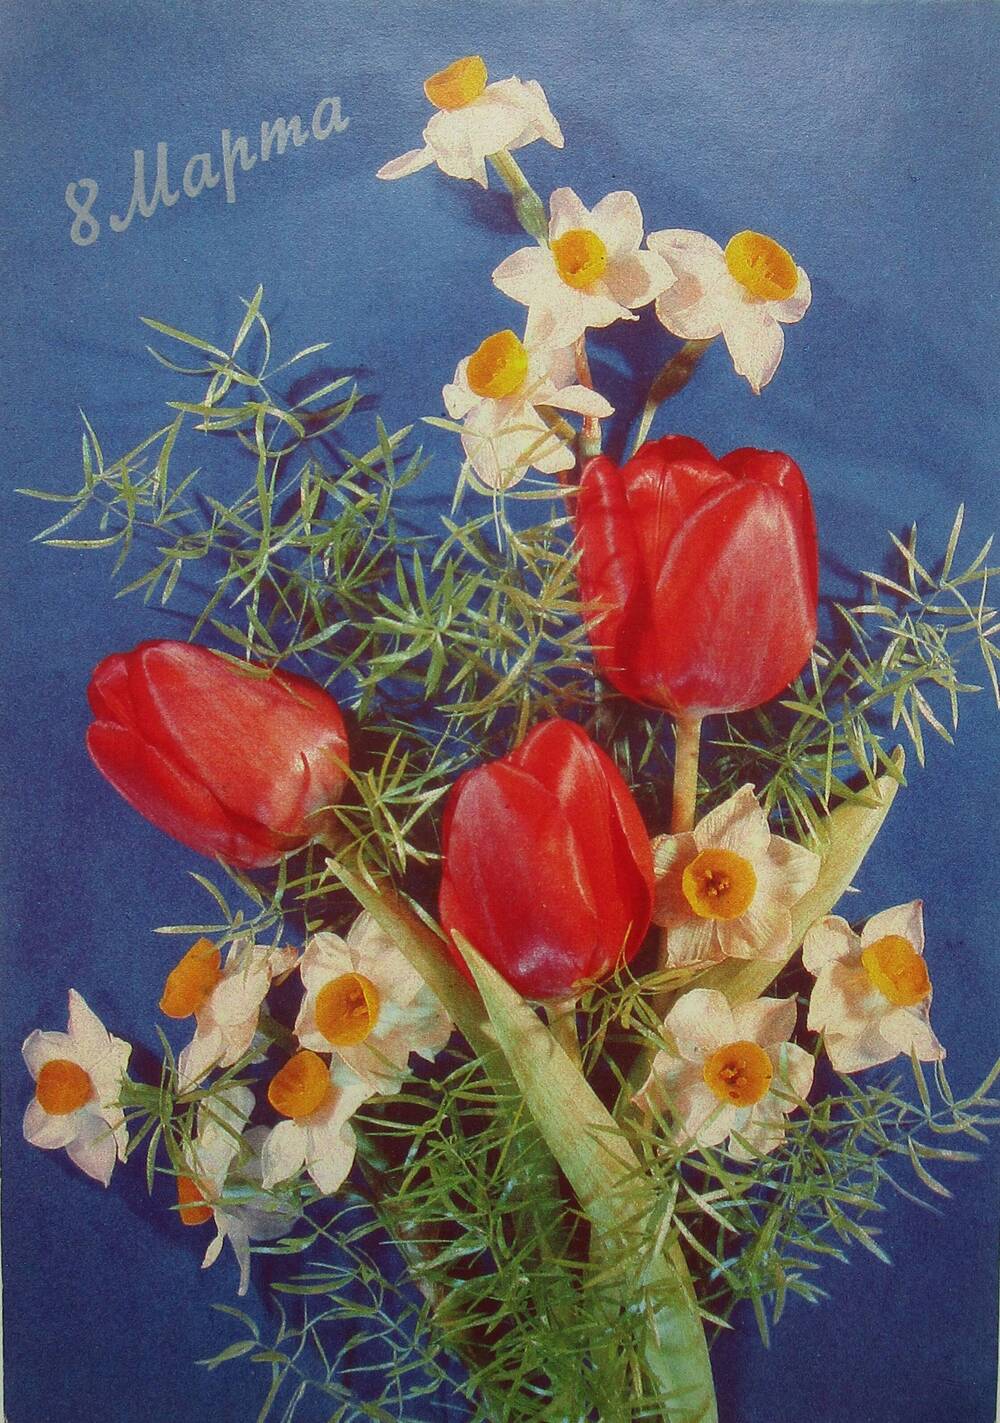 Открытка поздравительная. На синем фоне изображен букет цветов, обрамлённый зеленью из трёх красных тюльпанов и двенадцати белых нарциссов с желтой серединкой. Вверху надпись серебристой краской: «8 марта» 1990 год.